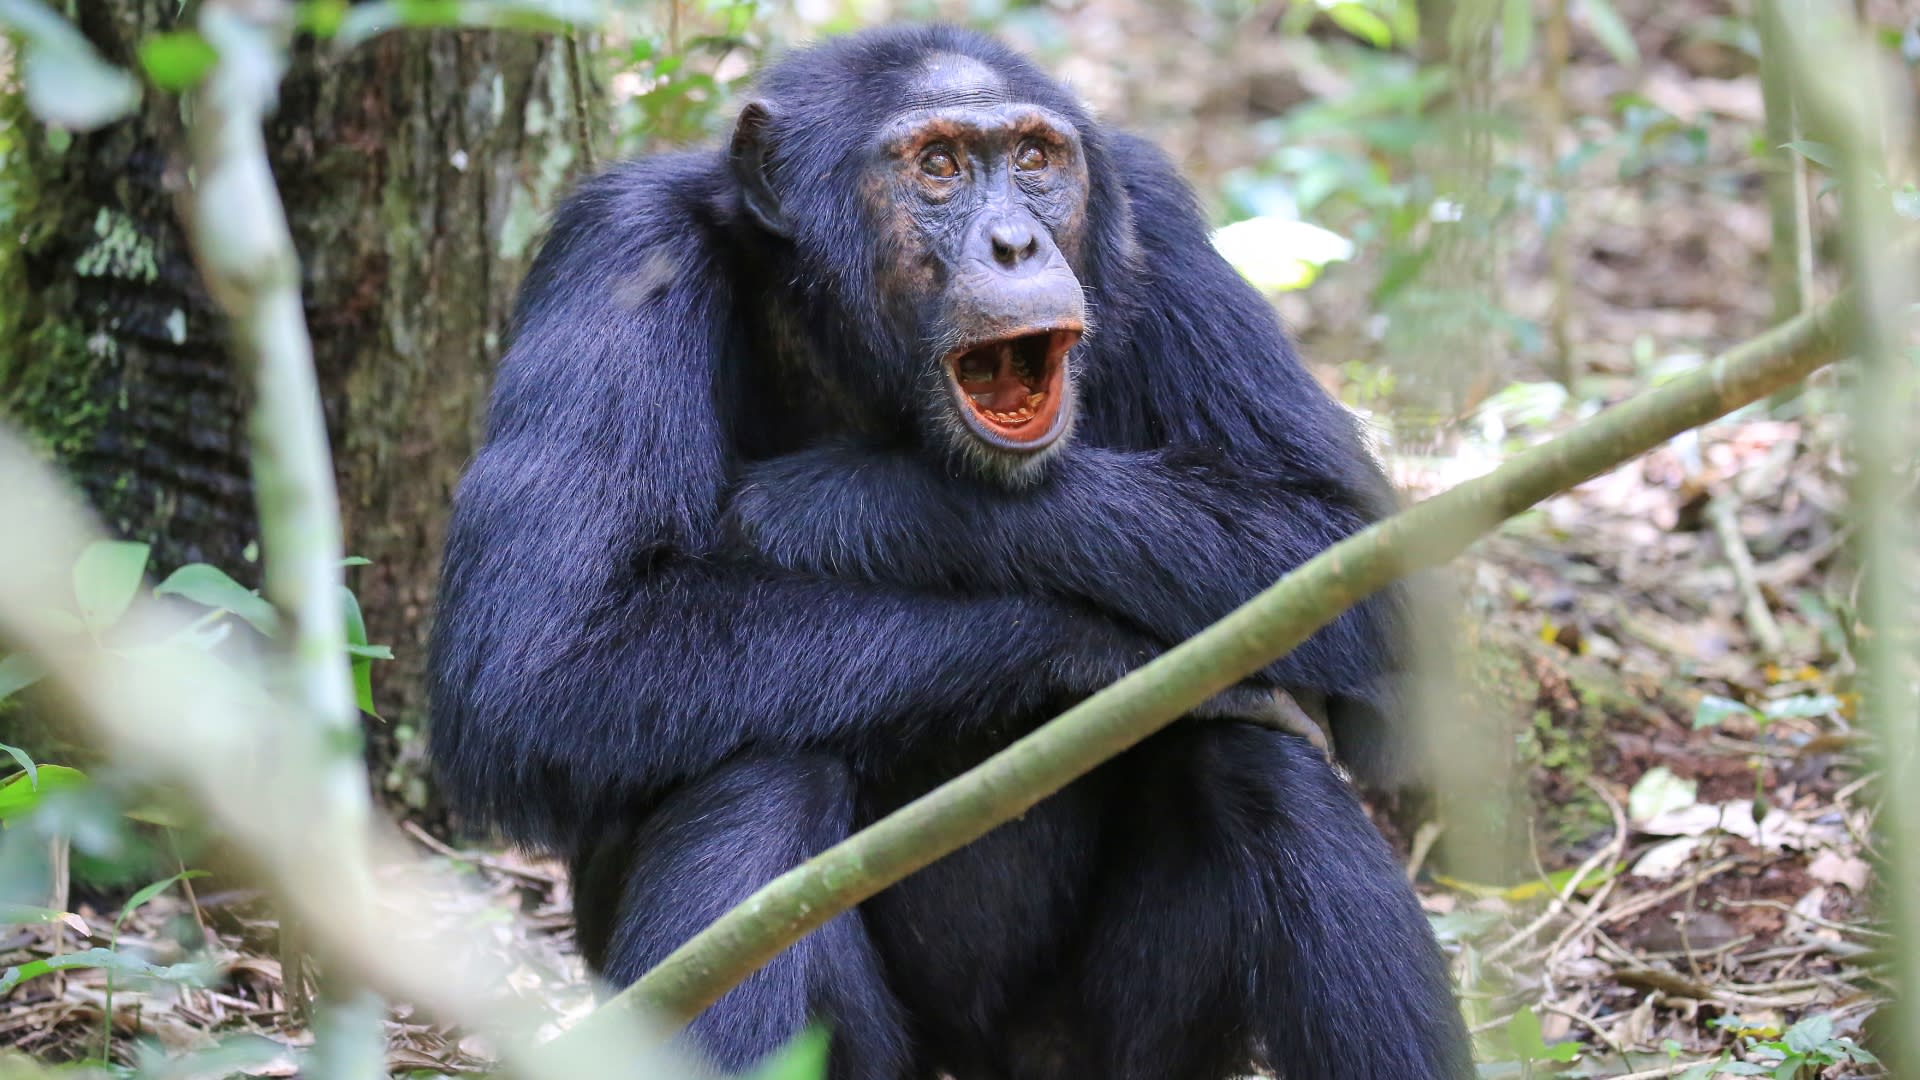 Nelekejte se, šimpanz na této fotce jen zívá